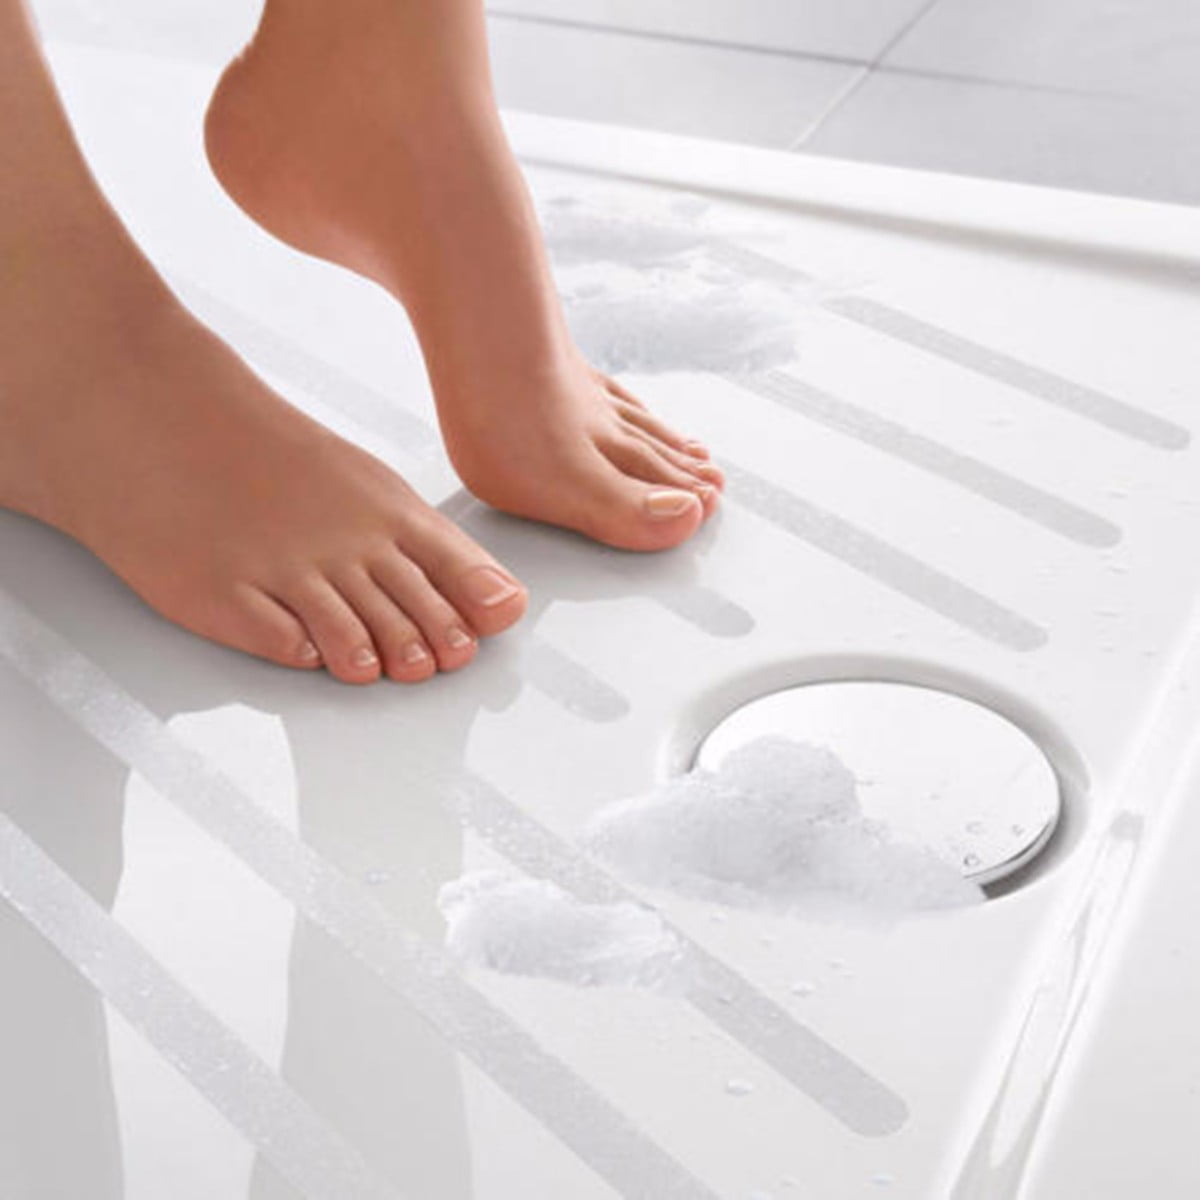 Details about   6Pcs Bath Tub Shower Sticker Anti Slip Grip Strips Non Slip Safety Floor Treads 